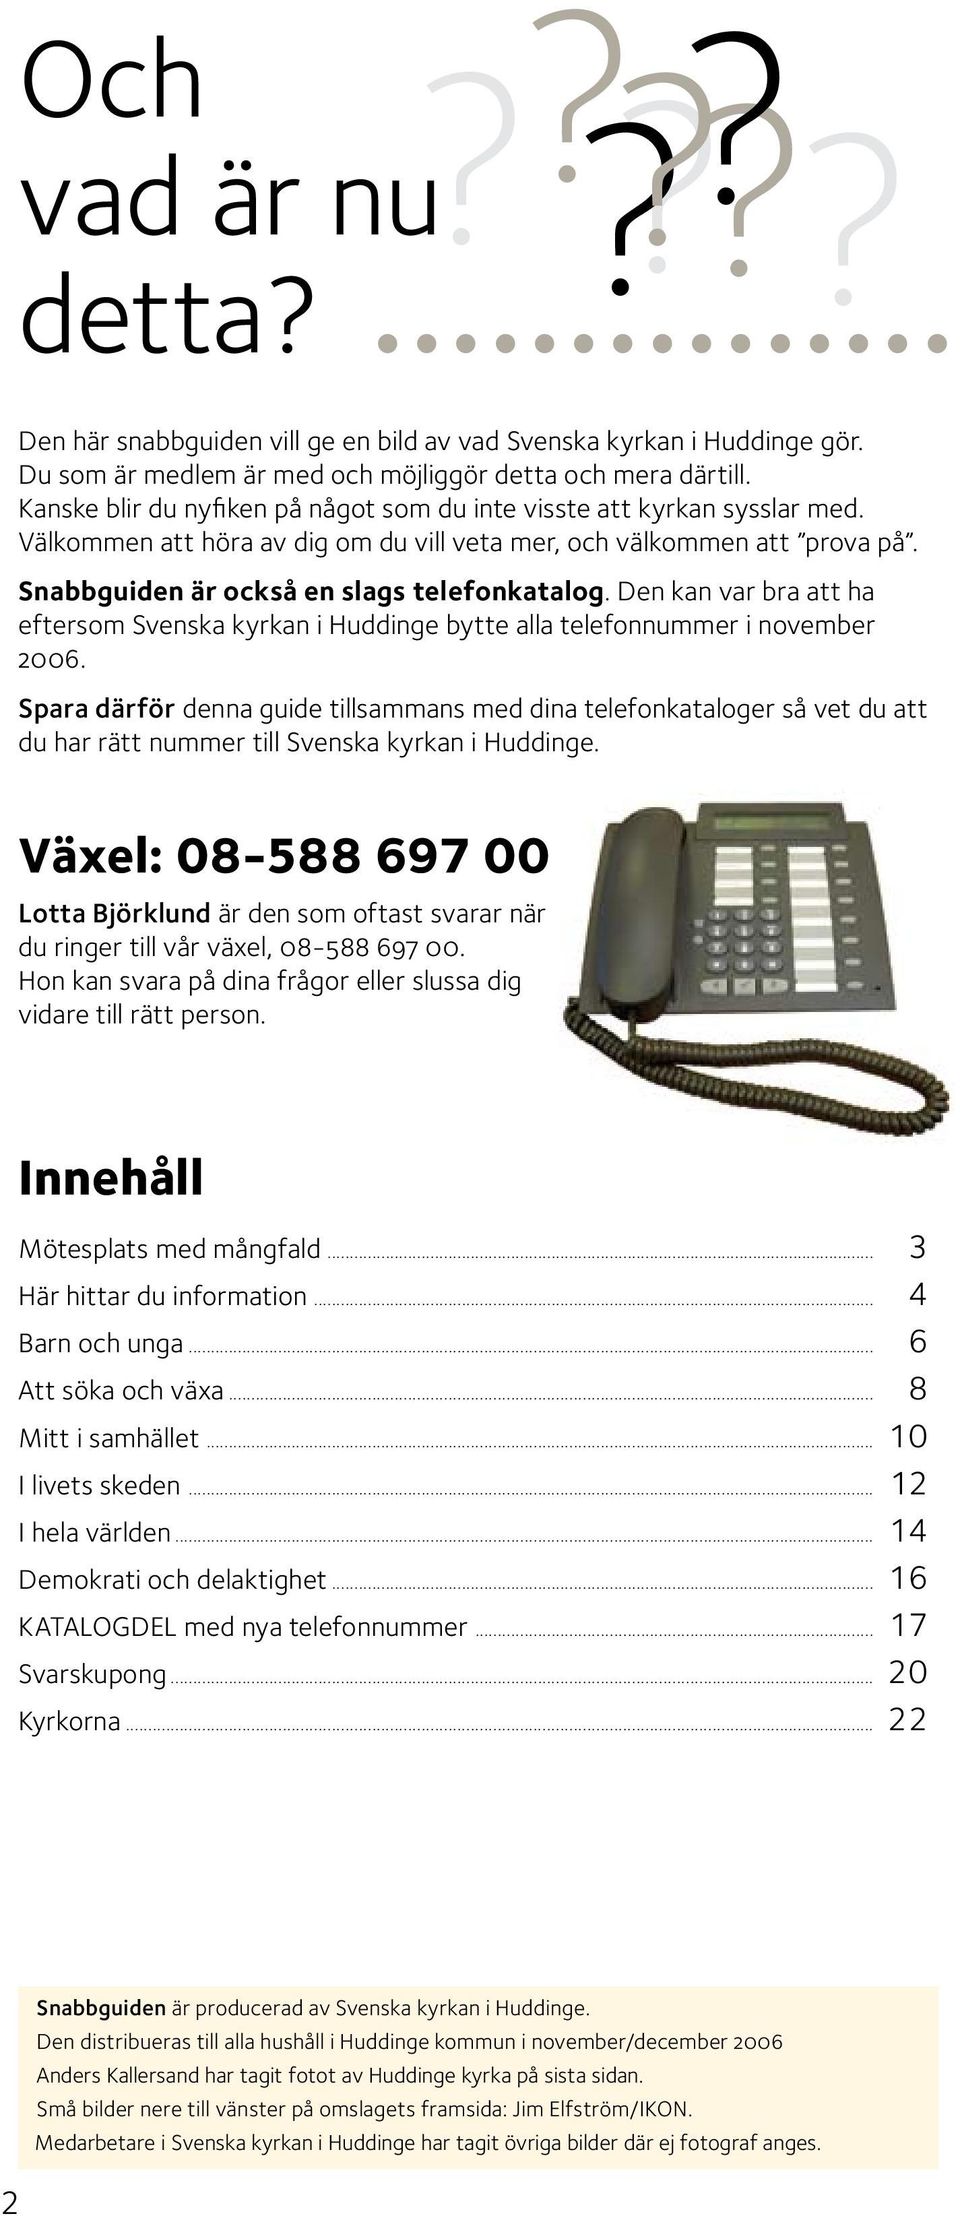 Den kan var bra att ha eftersom Svenska kyrkan i Huddinge bytte alla telefonnummer i november 2006.